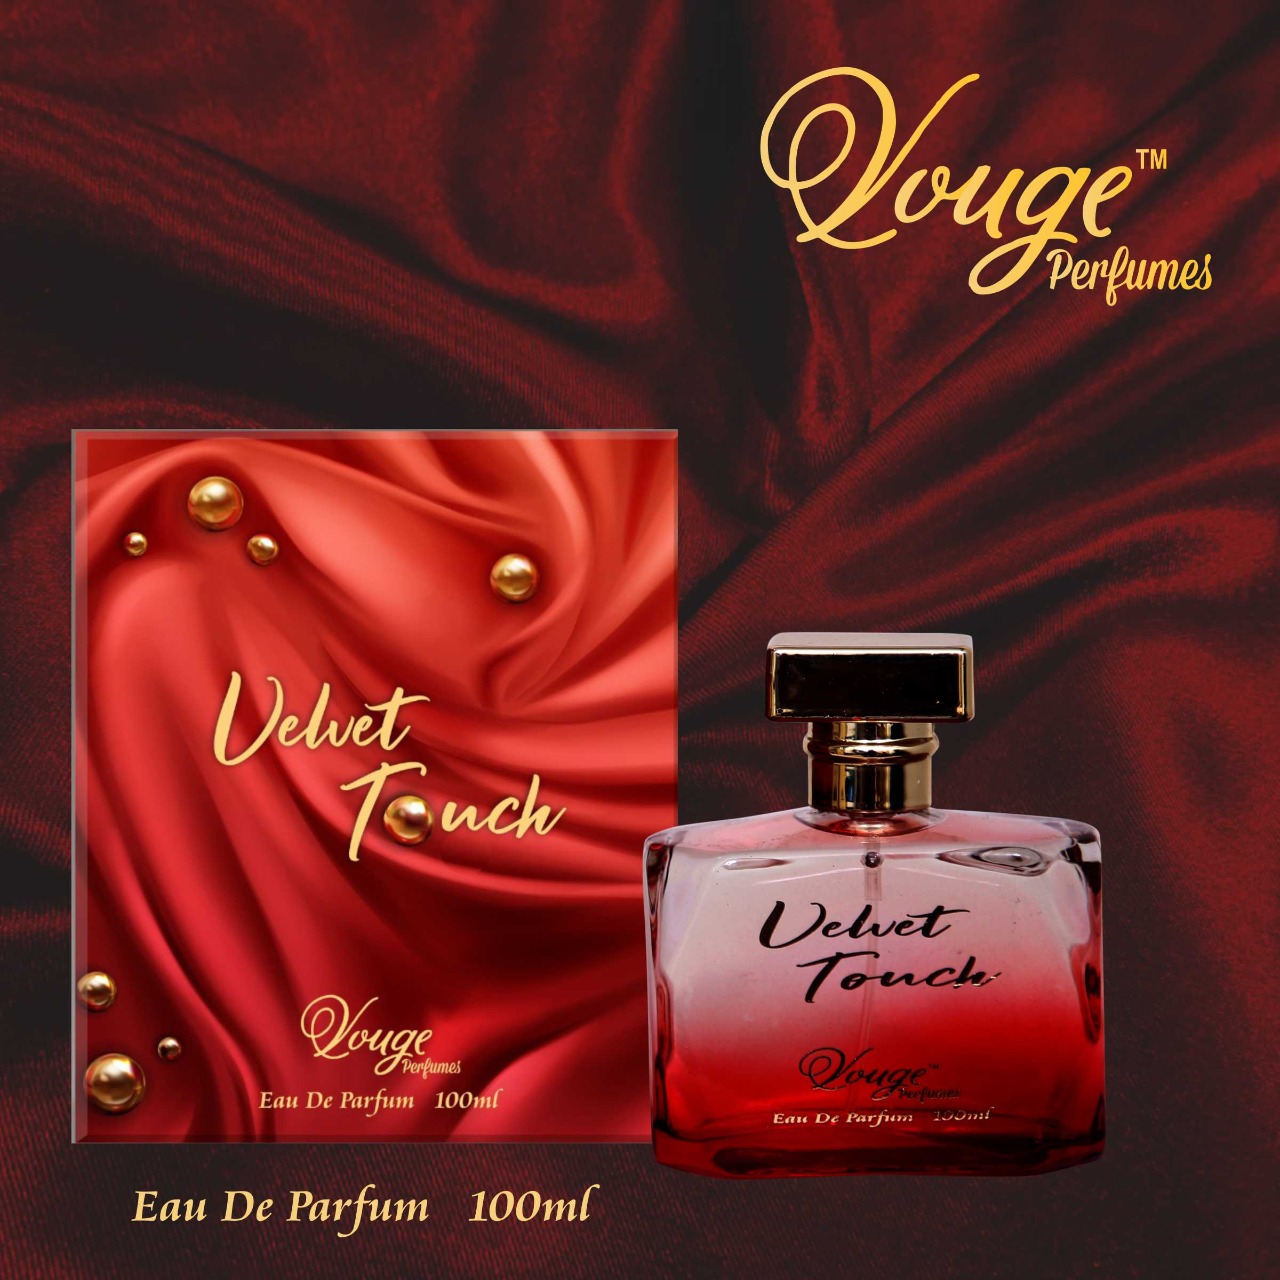 Vouge Perfume - Velvet Touch from Alminar fragnance